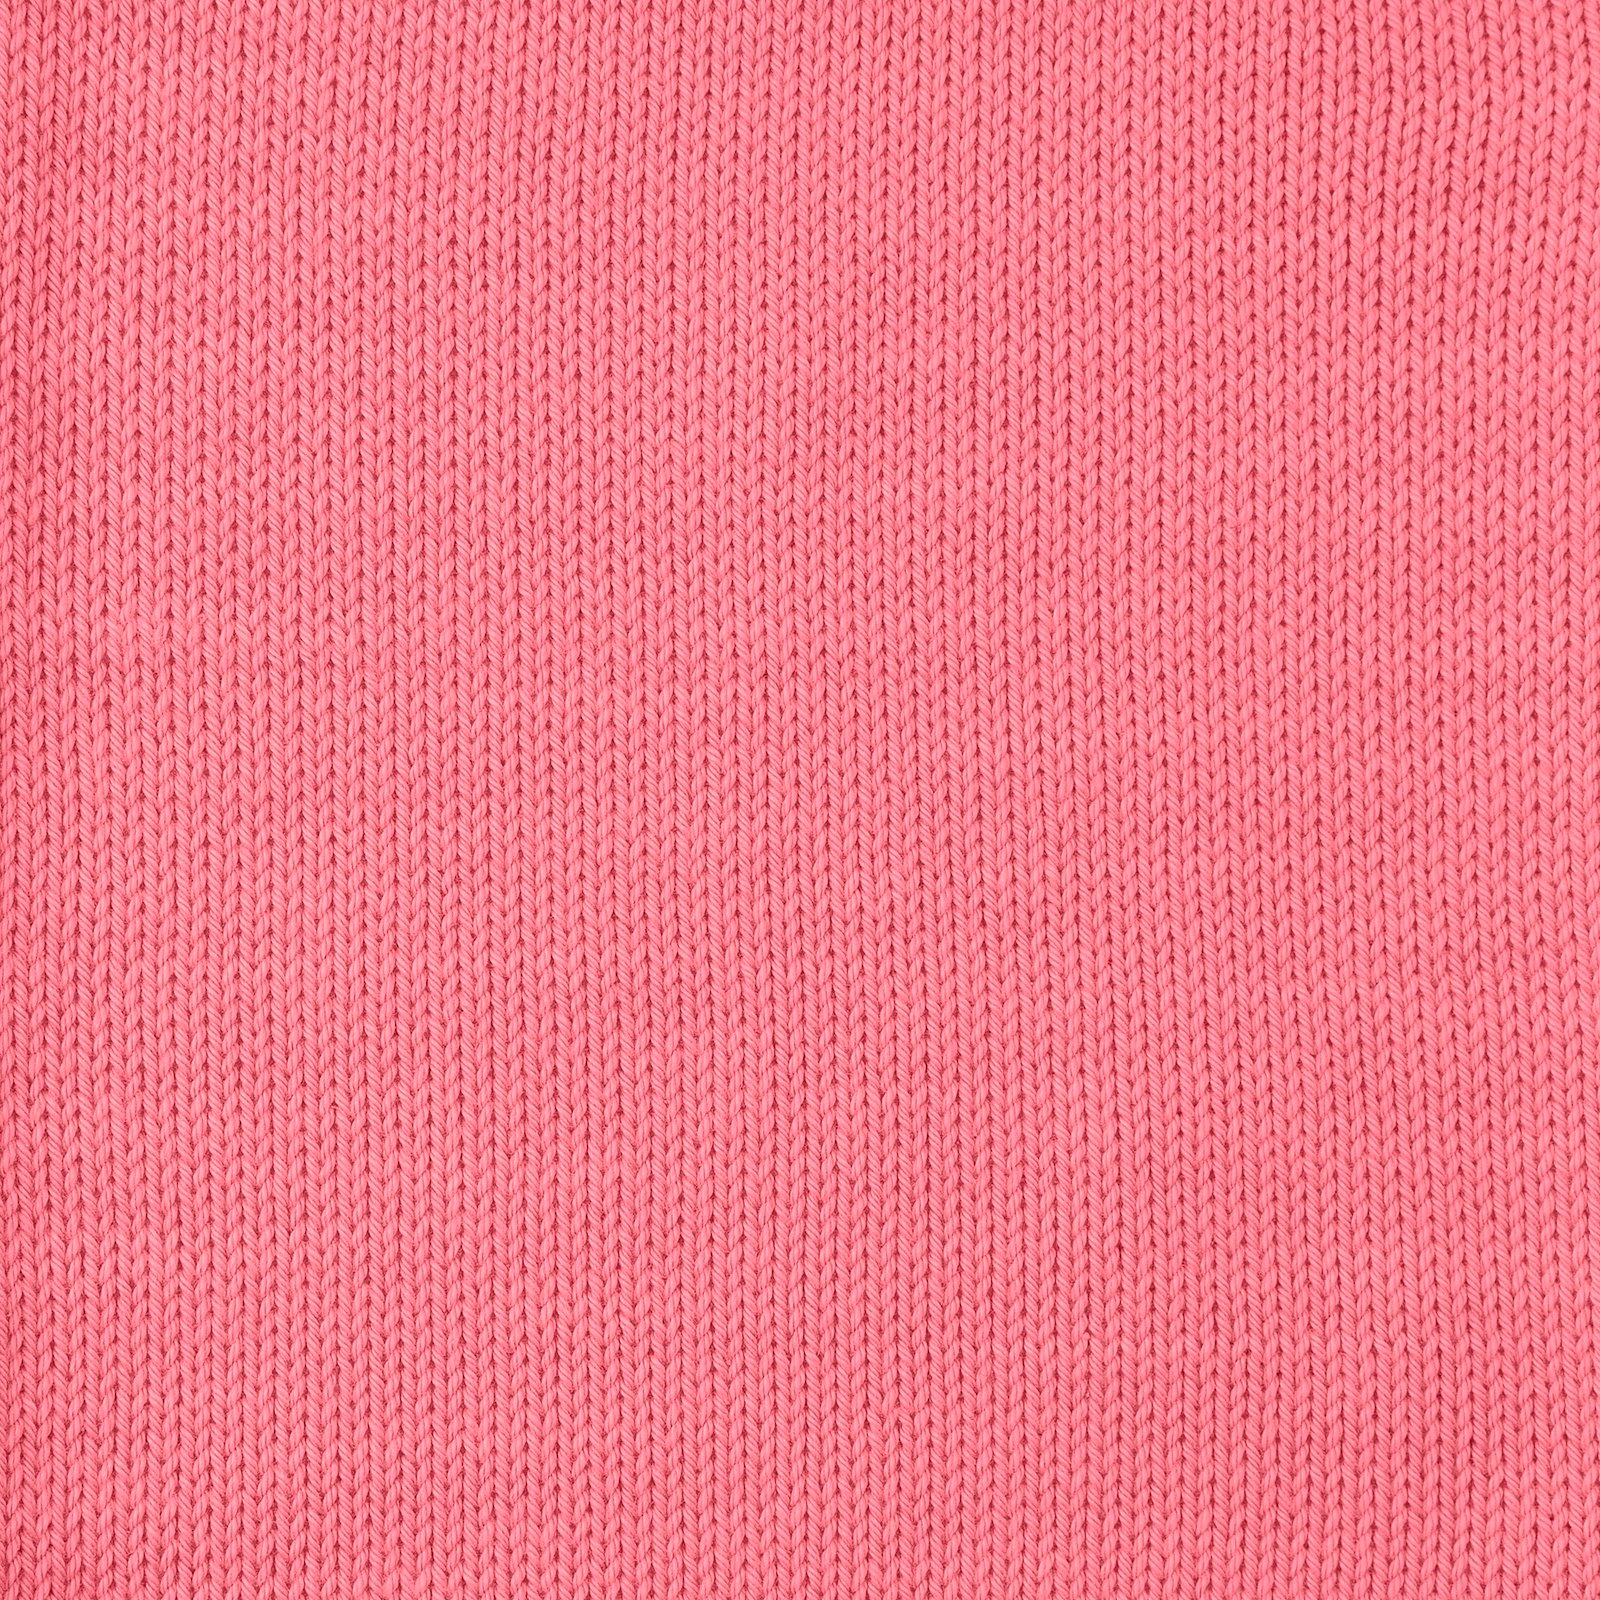 FRAYA, 100% cotton 8/4  yarn  "Colourful", coral 90060060_sskit